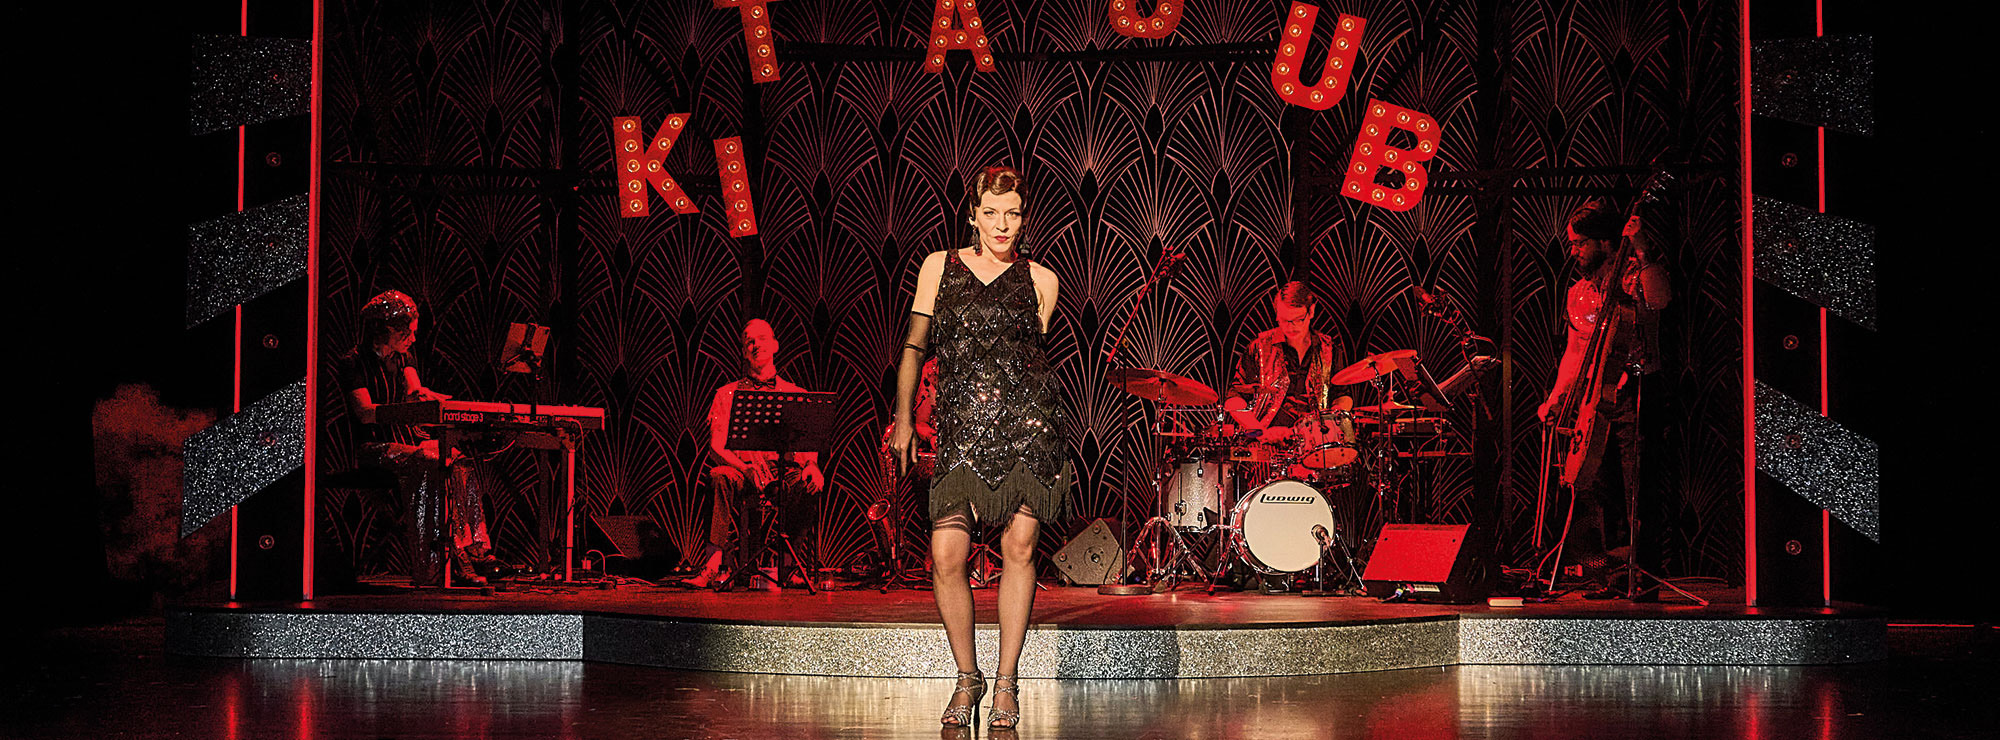 Im Hintergrund steht in großen leuchtenden Buchstaben KIT KAT CLUB, davor spielt eine Band und es tanzt eine Frau in einem glitzernden schwarzen Kleid im Stil der 1920er-Jahre.